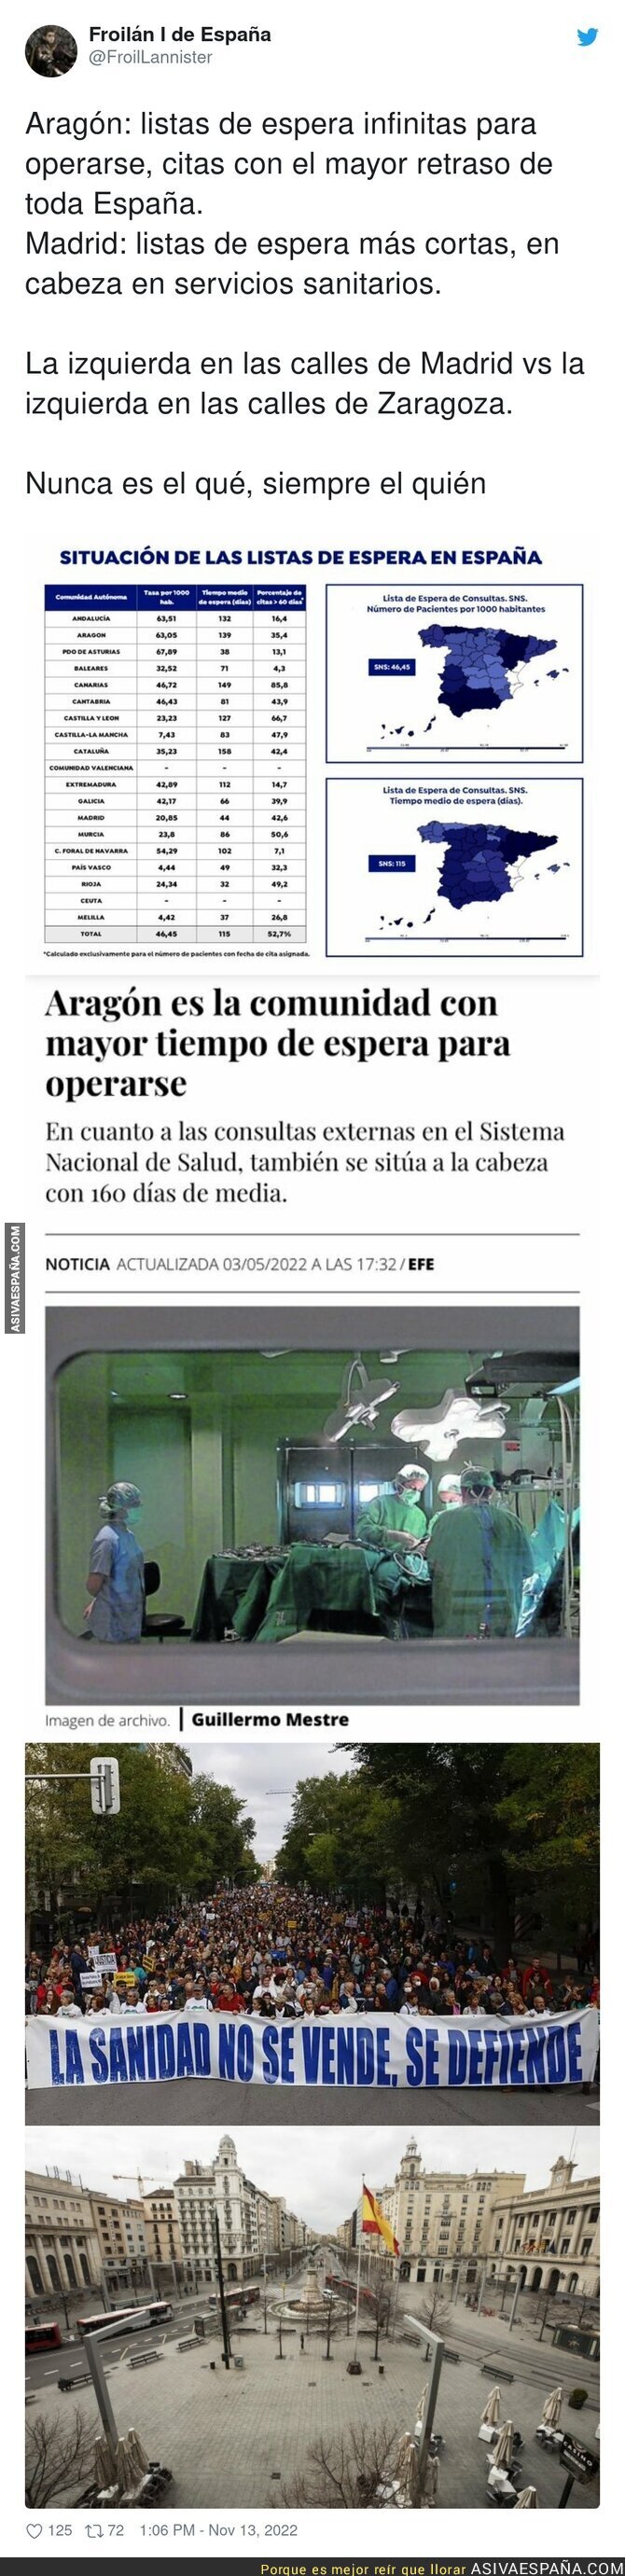 ¿Nadie se manifiesta en Aragón?